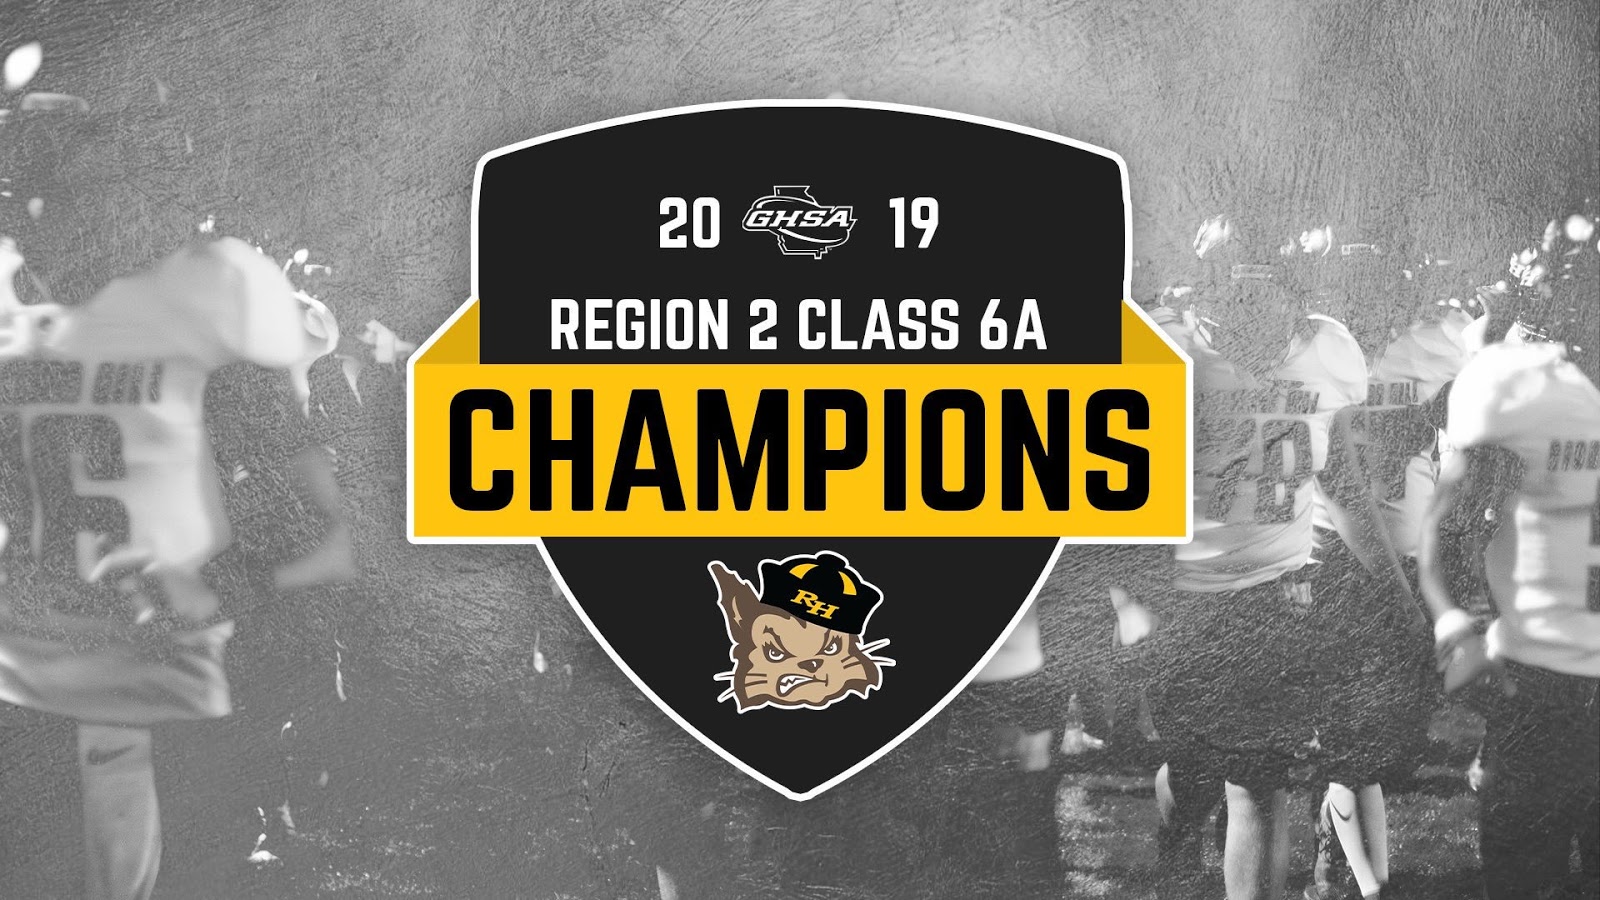 2019 Region 2 Class 6A Champions